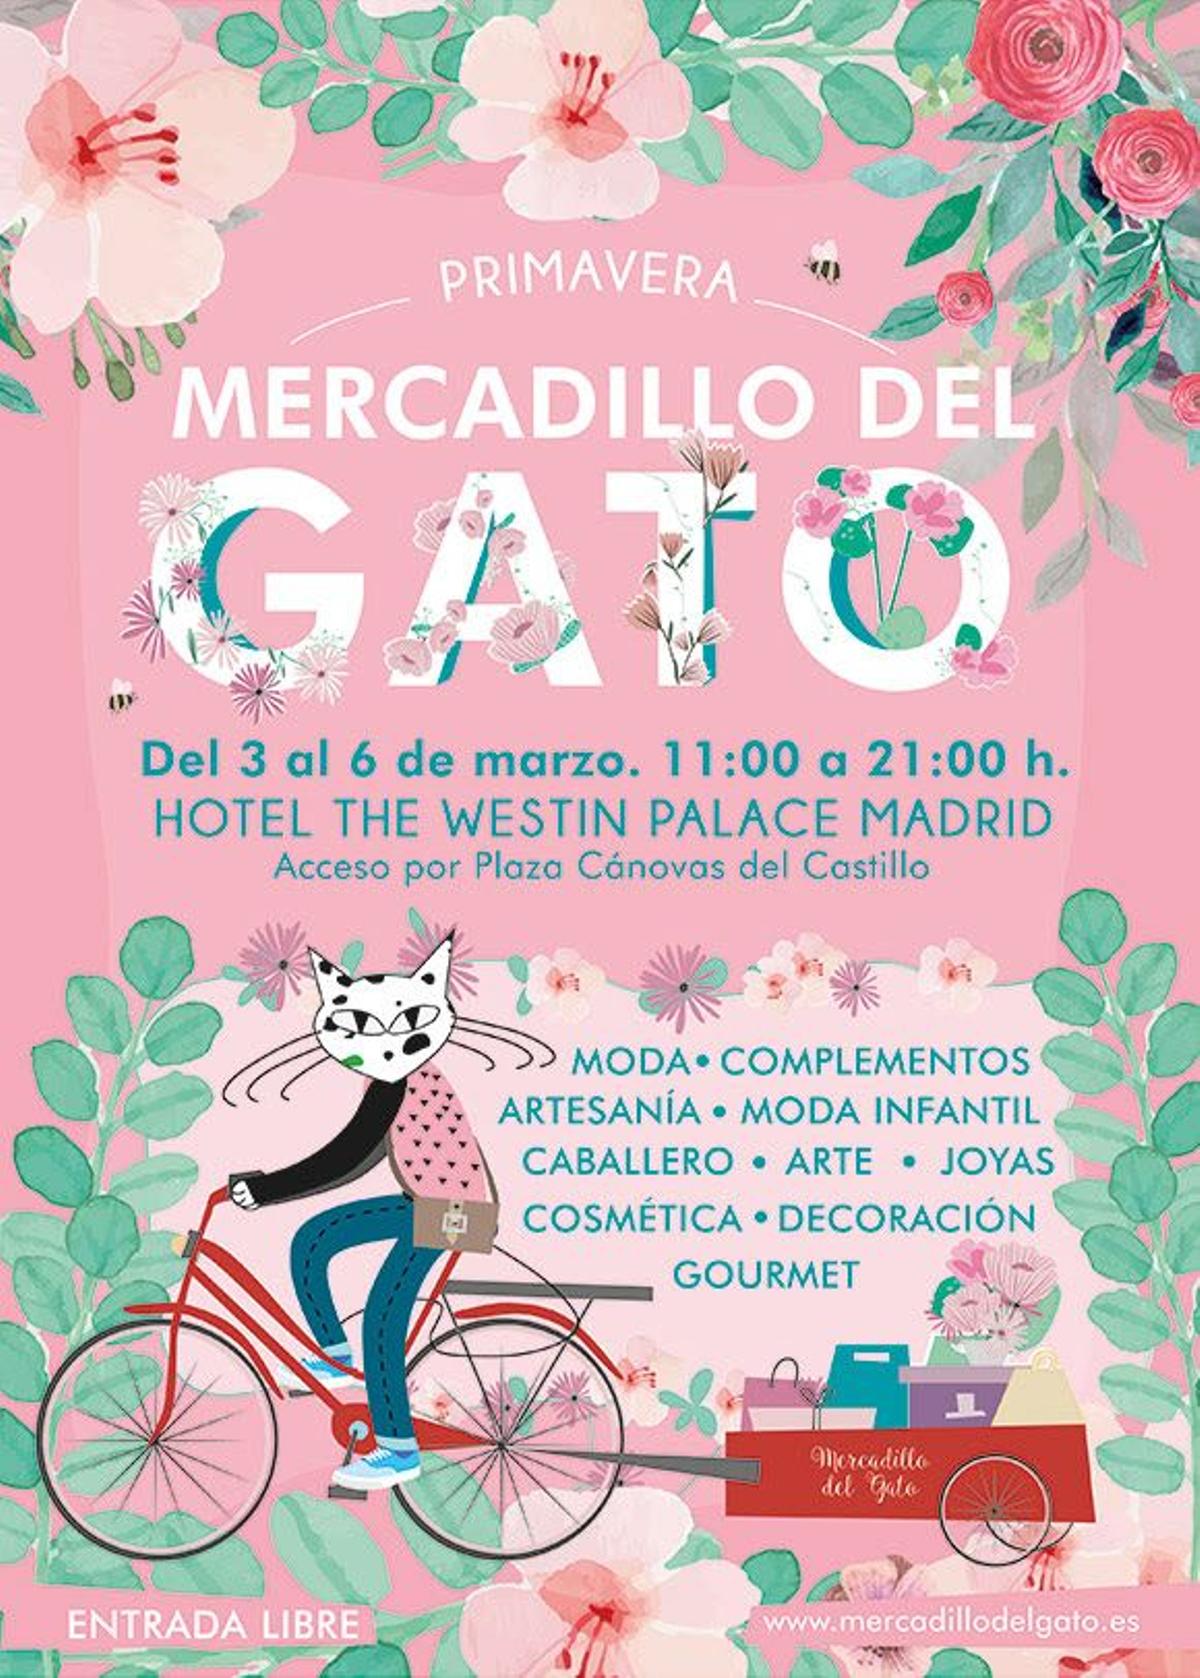 Mercadillo del gato, Madrid